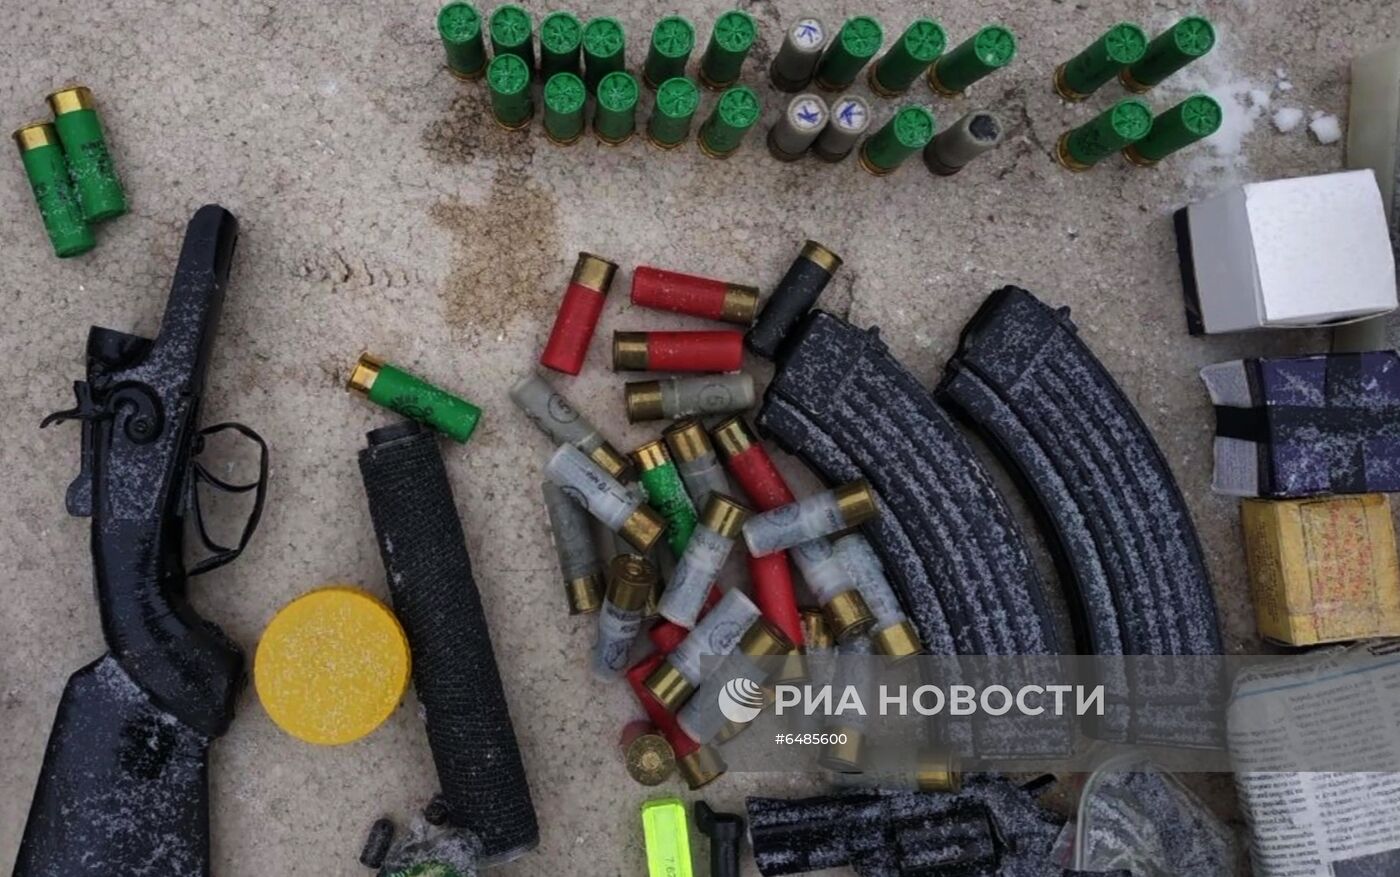 ФСБ РФ пресекла деятельность подпольных оружейных мастерских